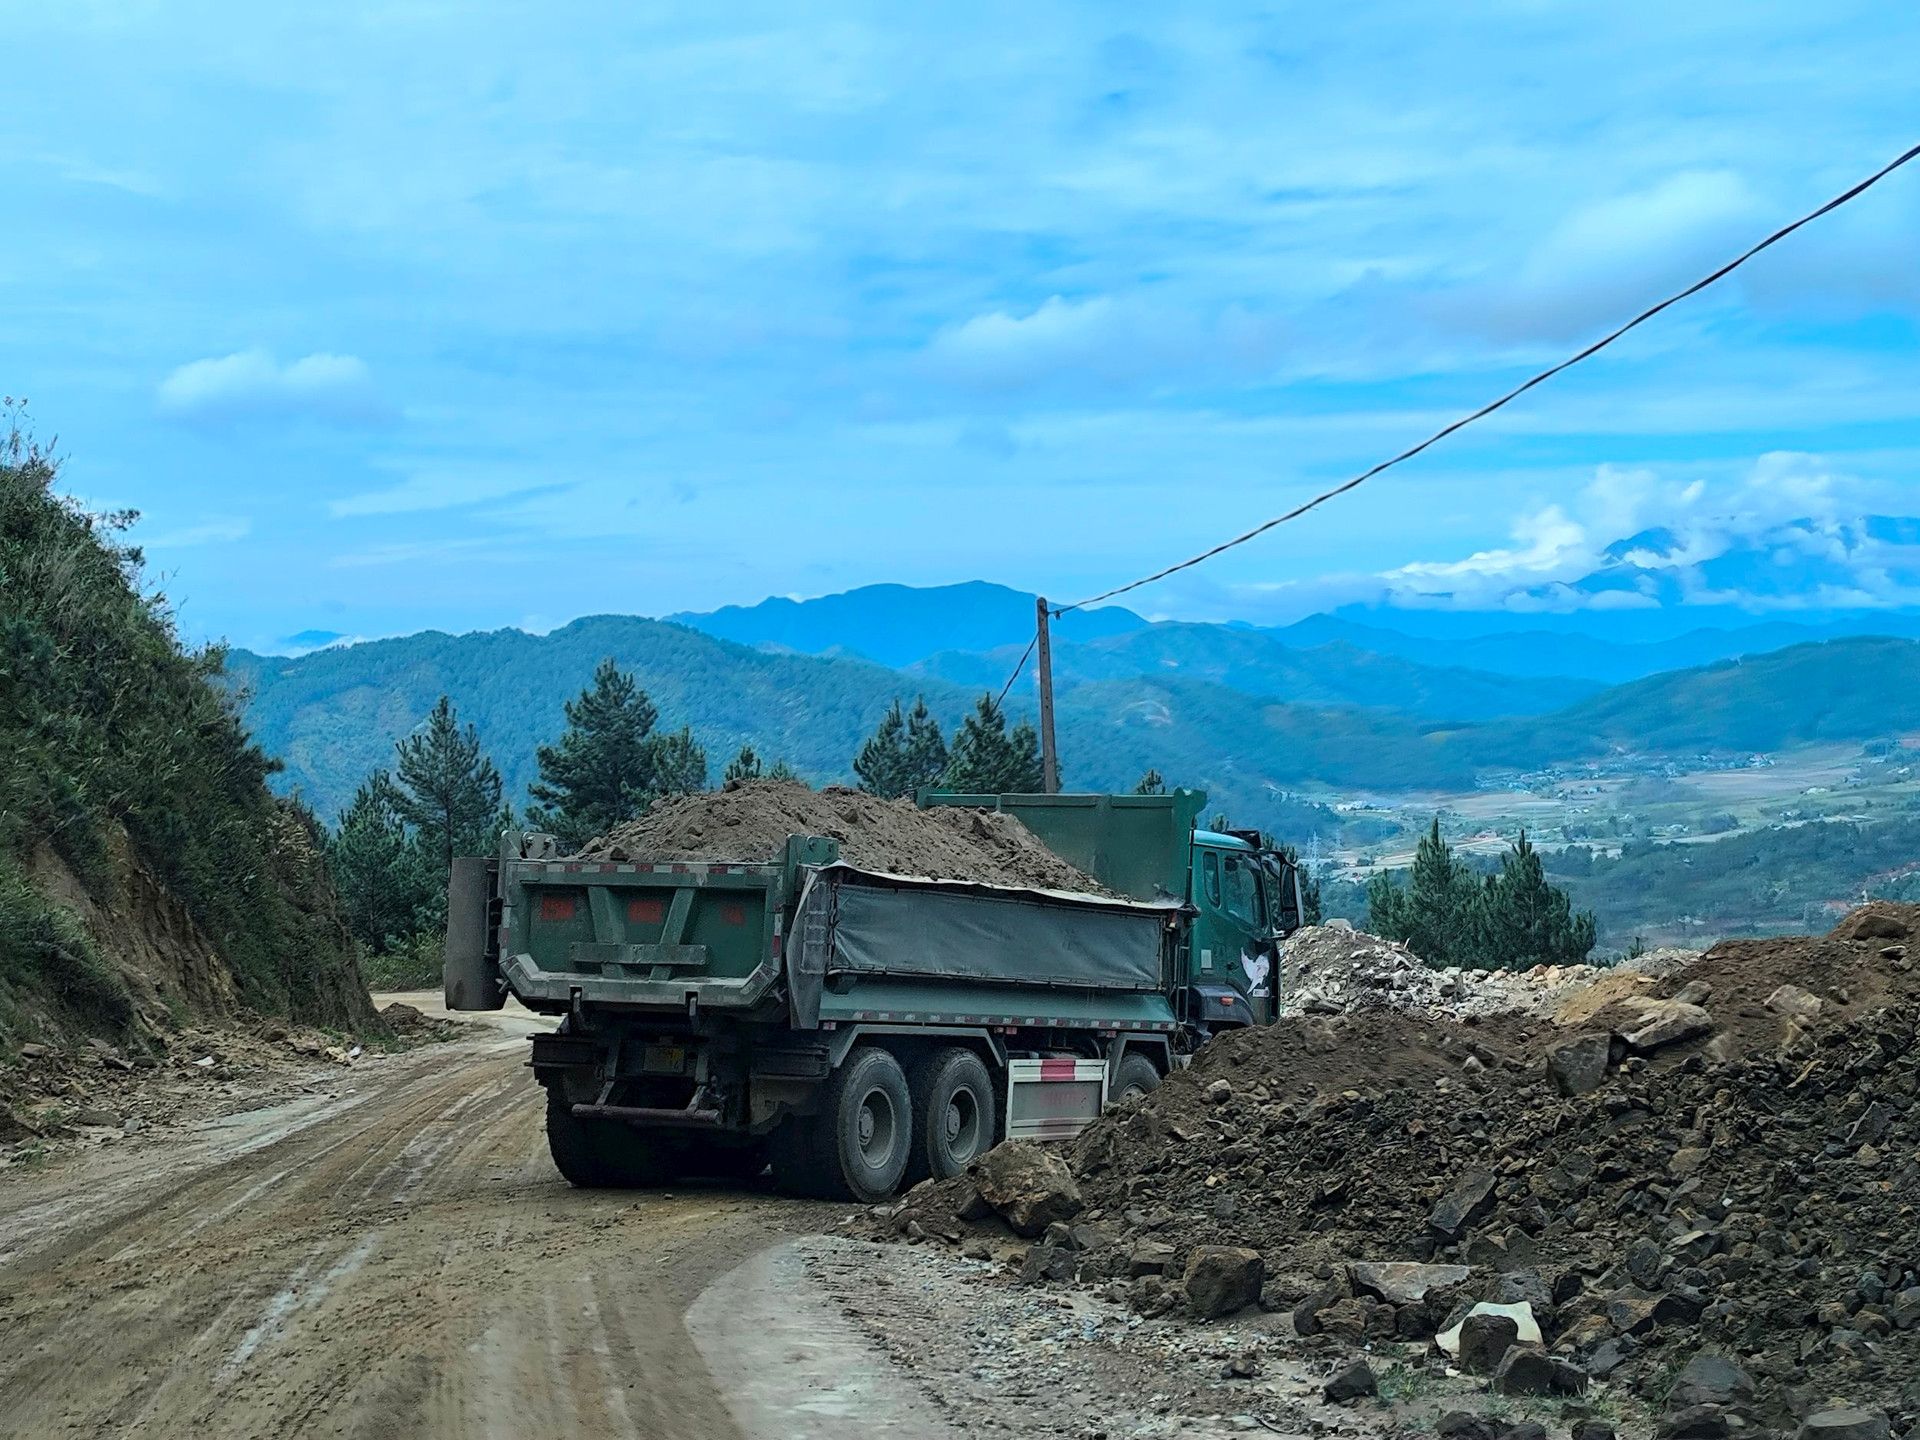 Huyện Than Uyên (Lai Châu): Đơn vị thi công đổ thải xuống vệ rừng?